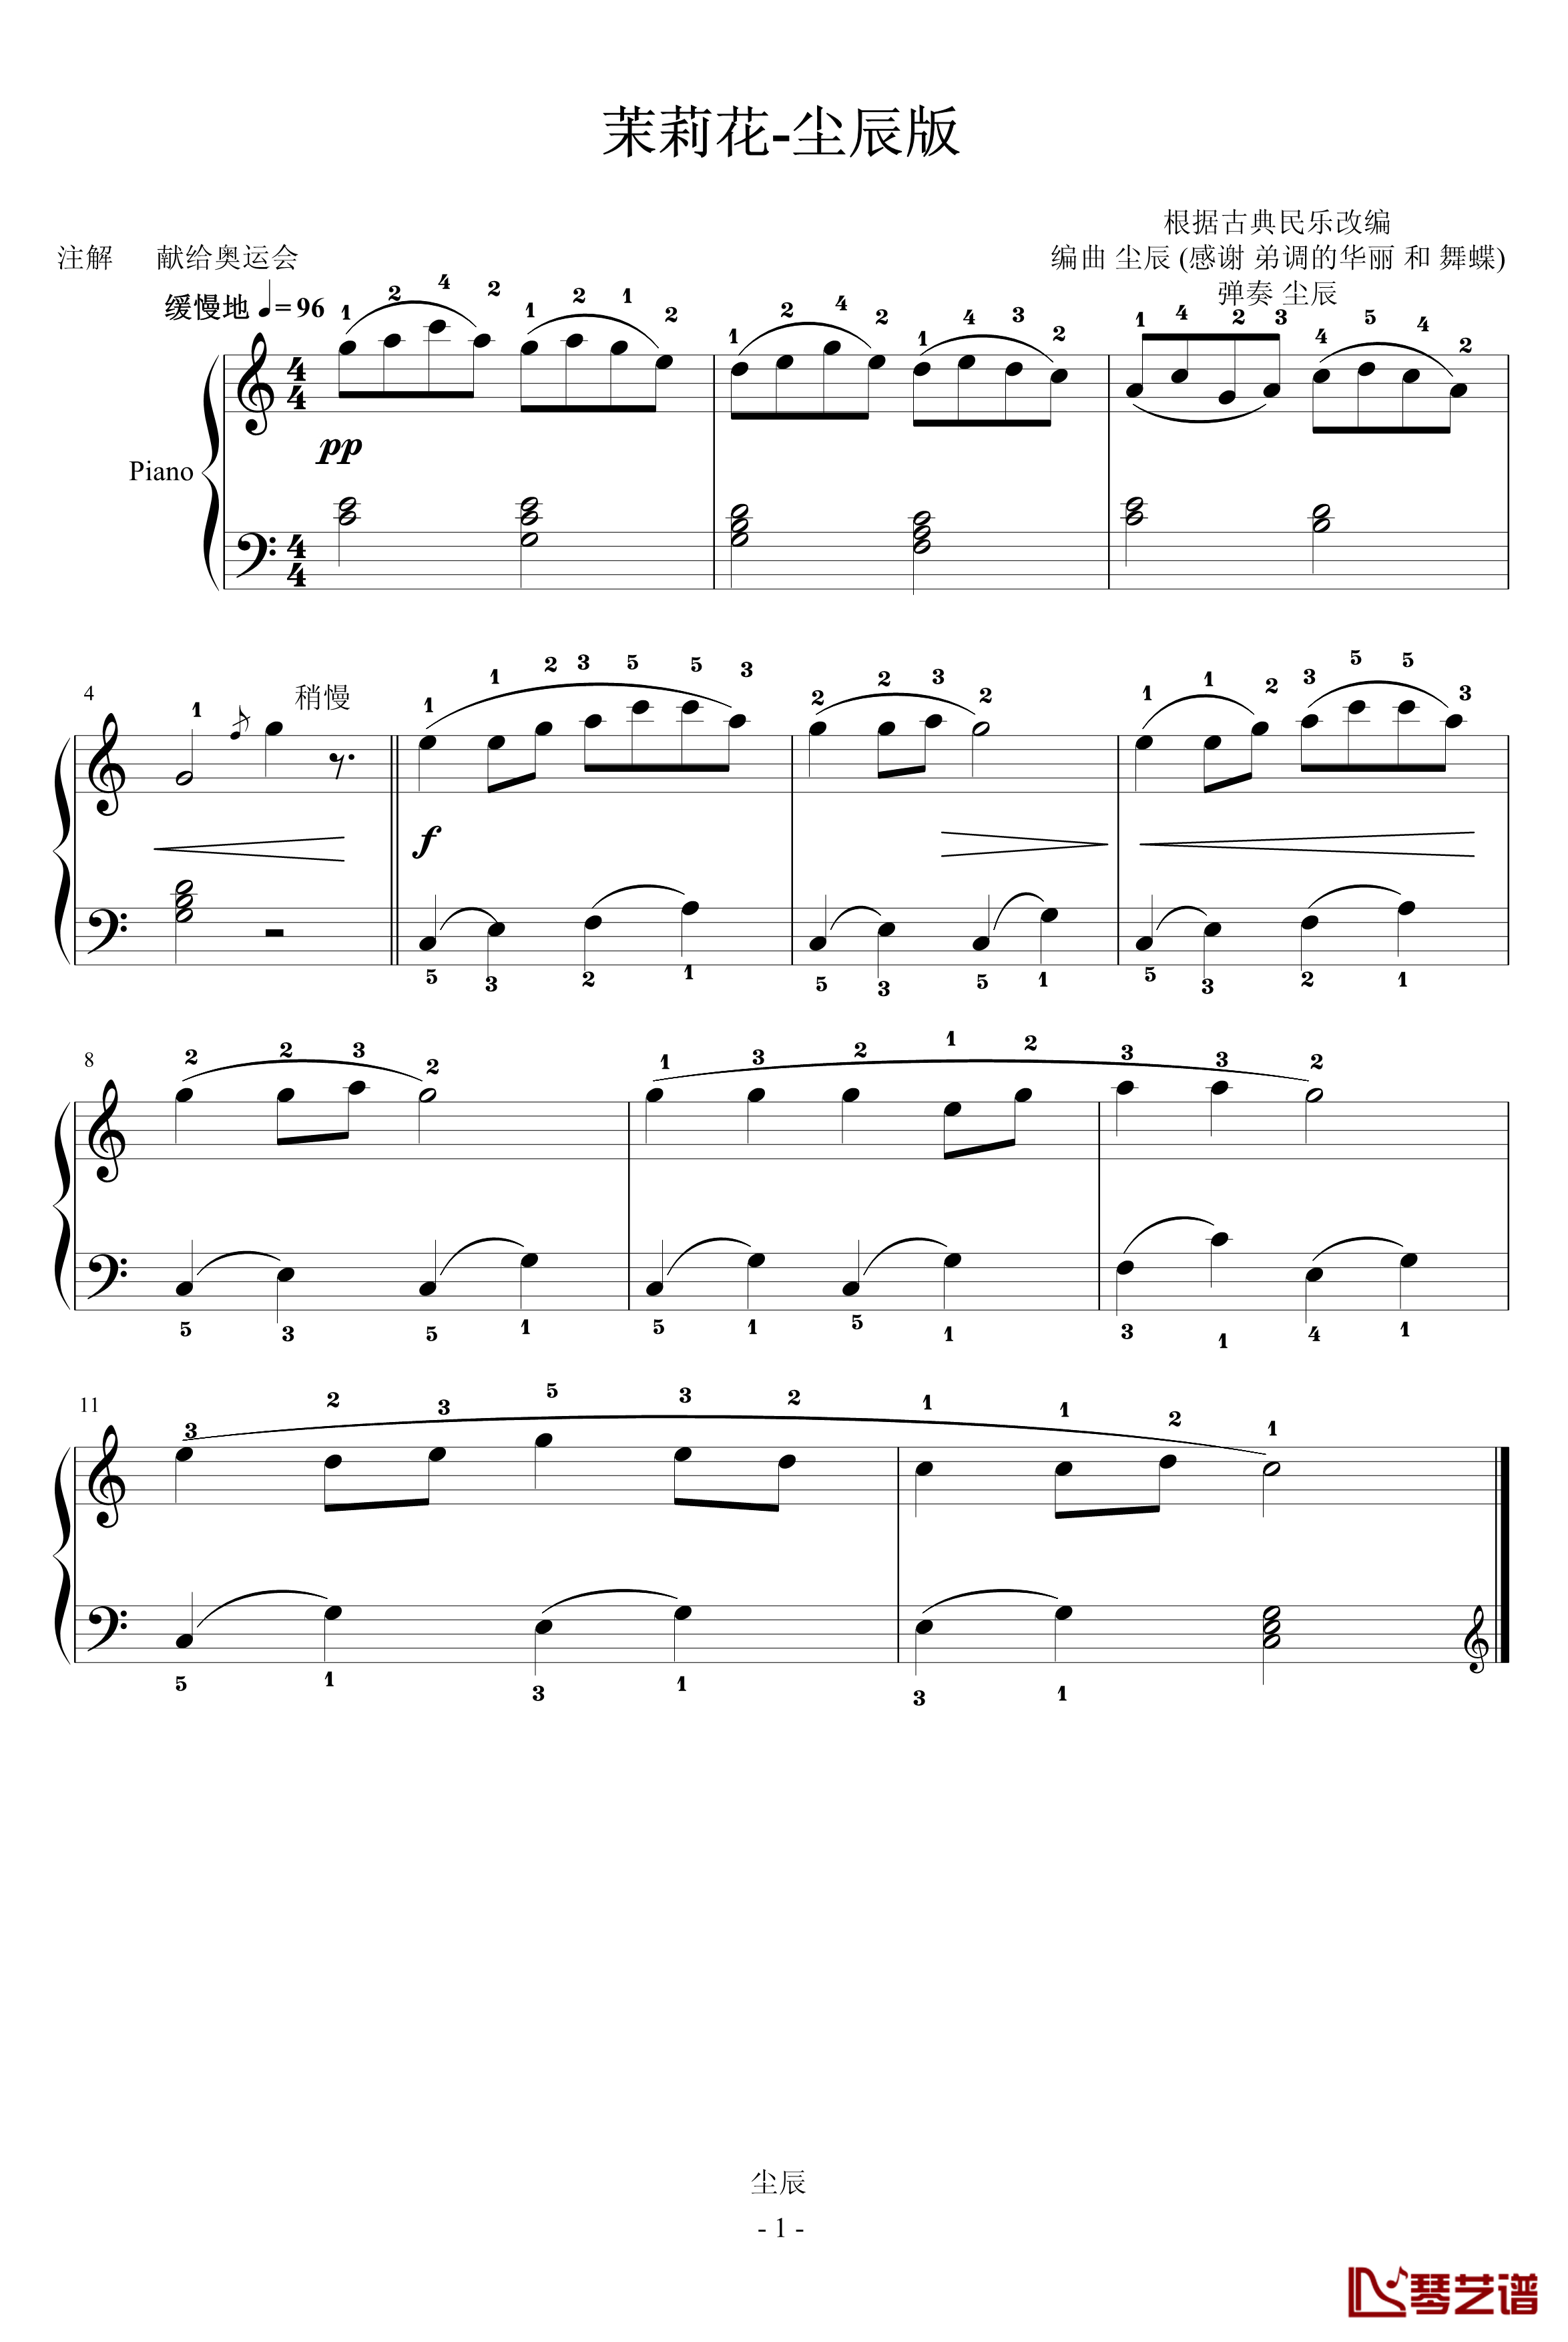 茉莉花钢琴谱-尘辰版超简化版-中国名曲1